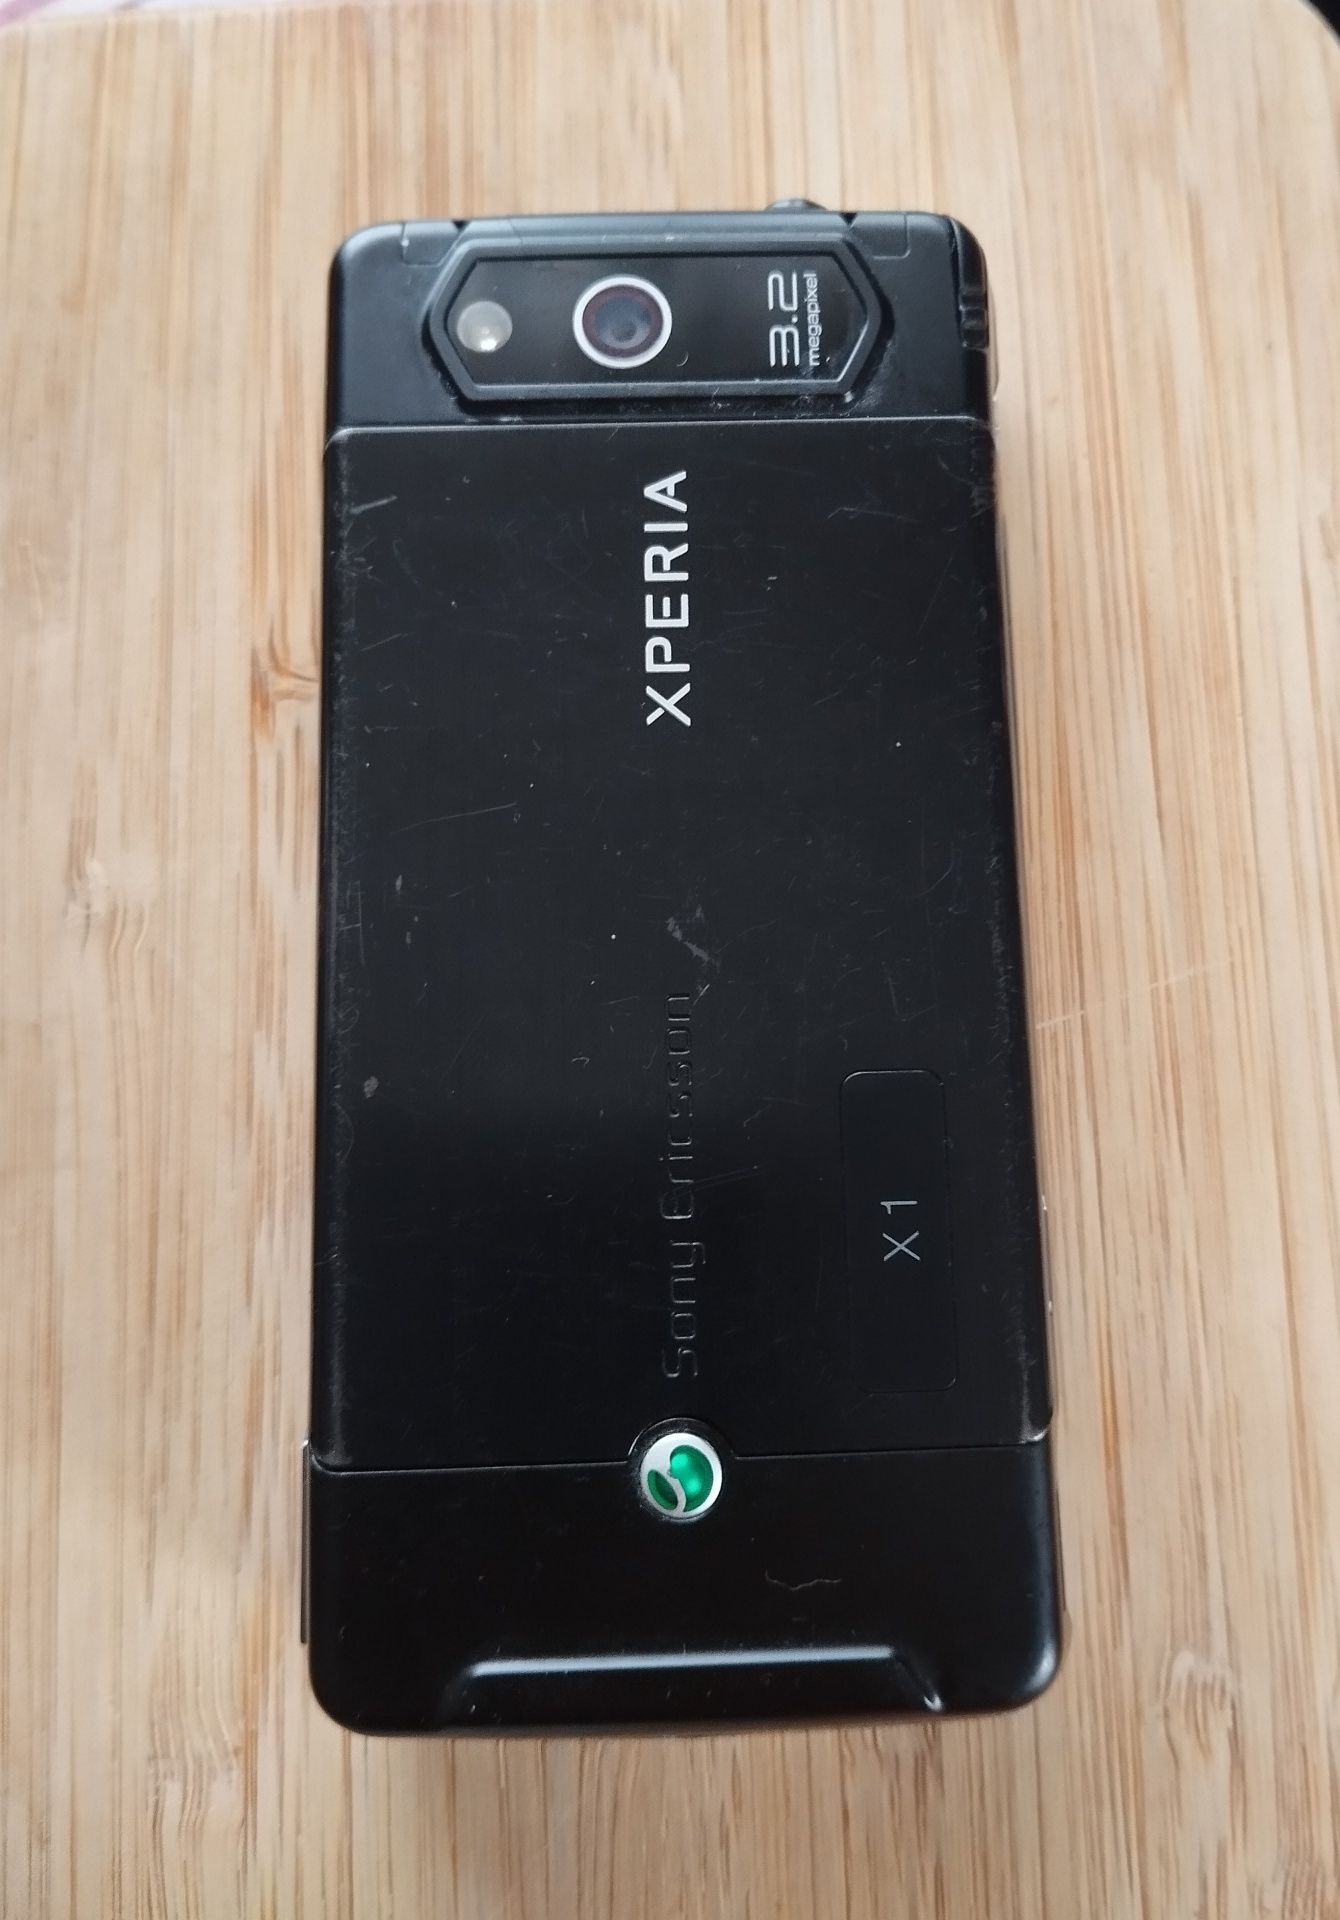 Vând Sony Ericsson Xperia x1